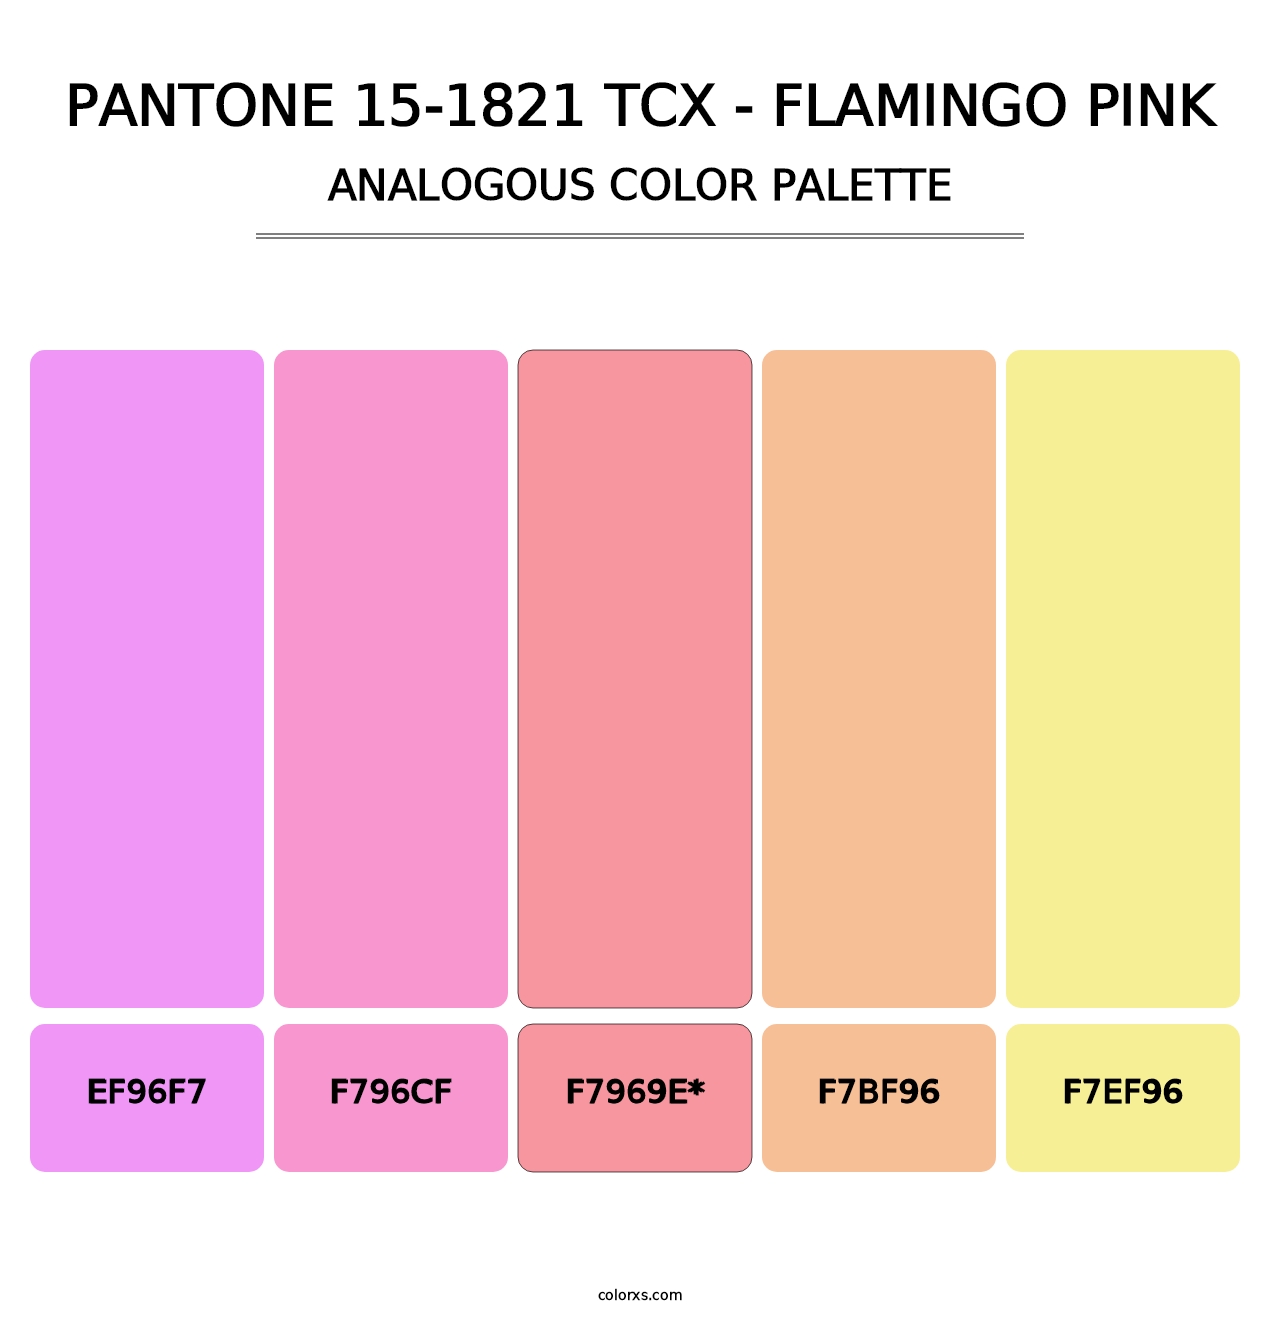 PANTONE 15-1821 TCX - Flamingo Pink - Analogous Color Palette